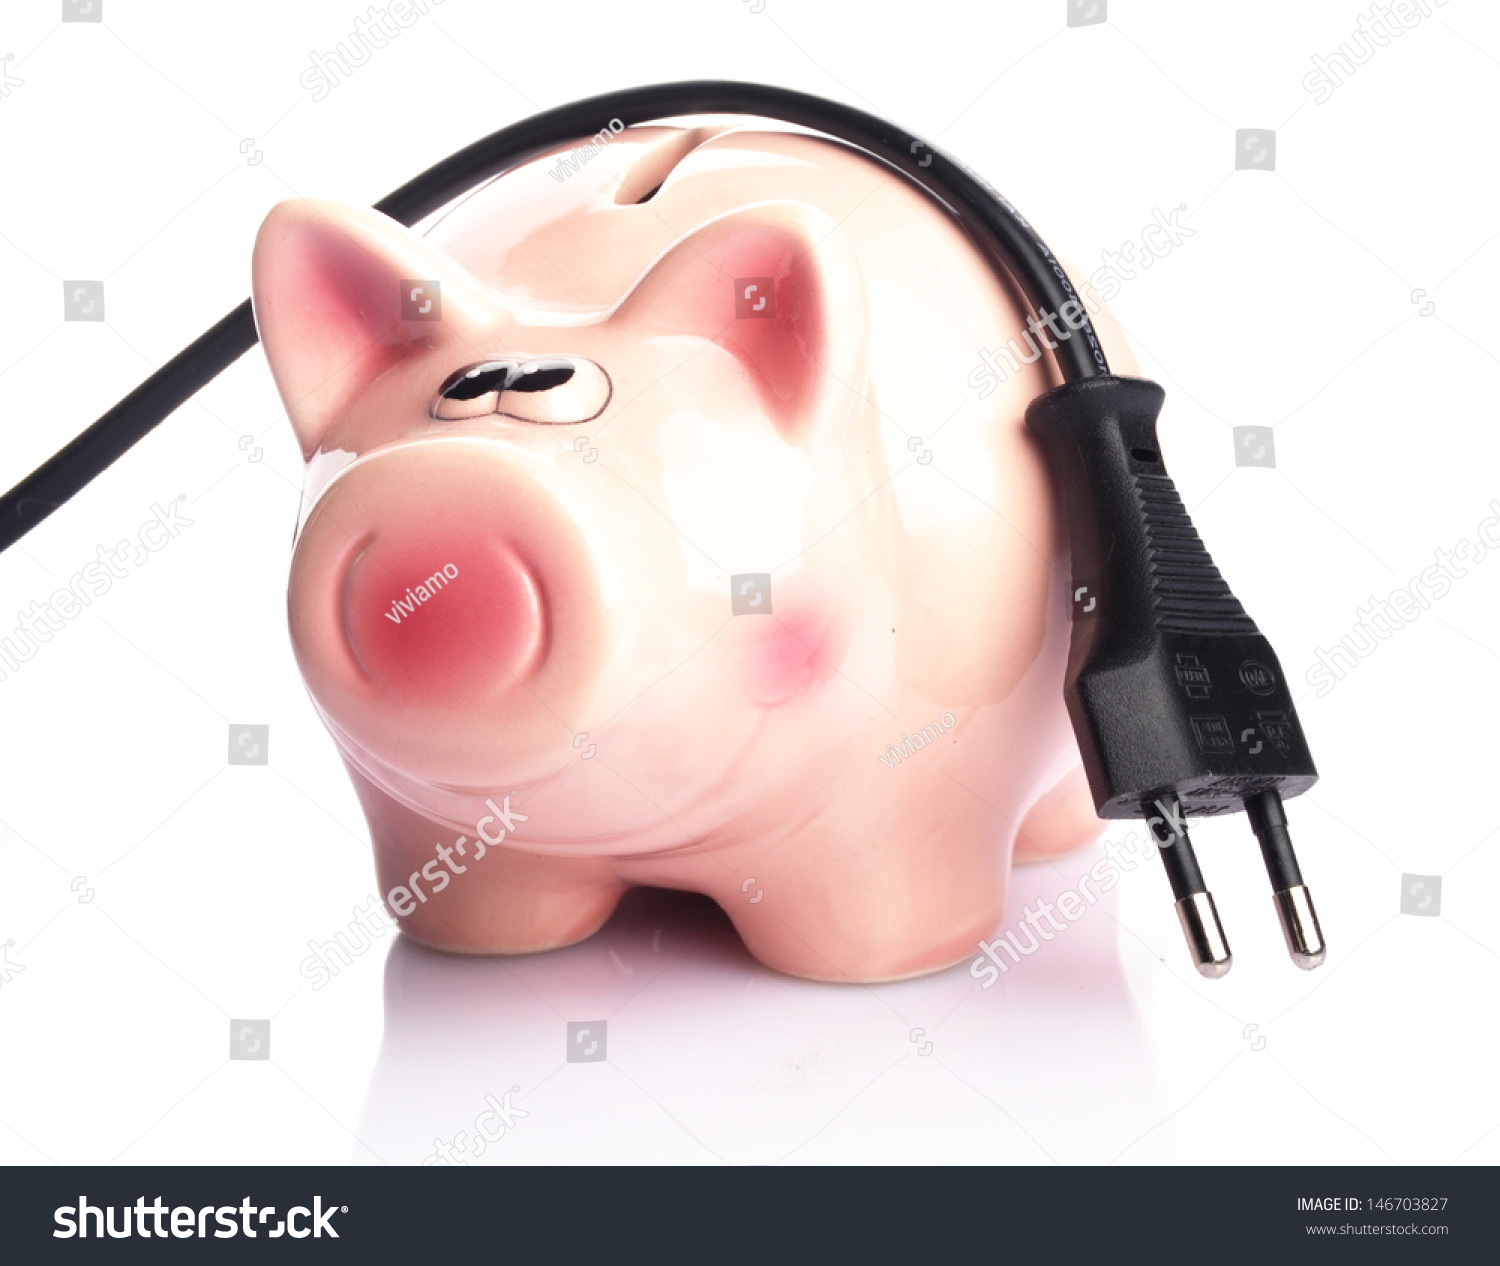 piggy bank plugs